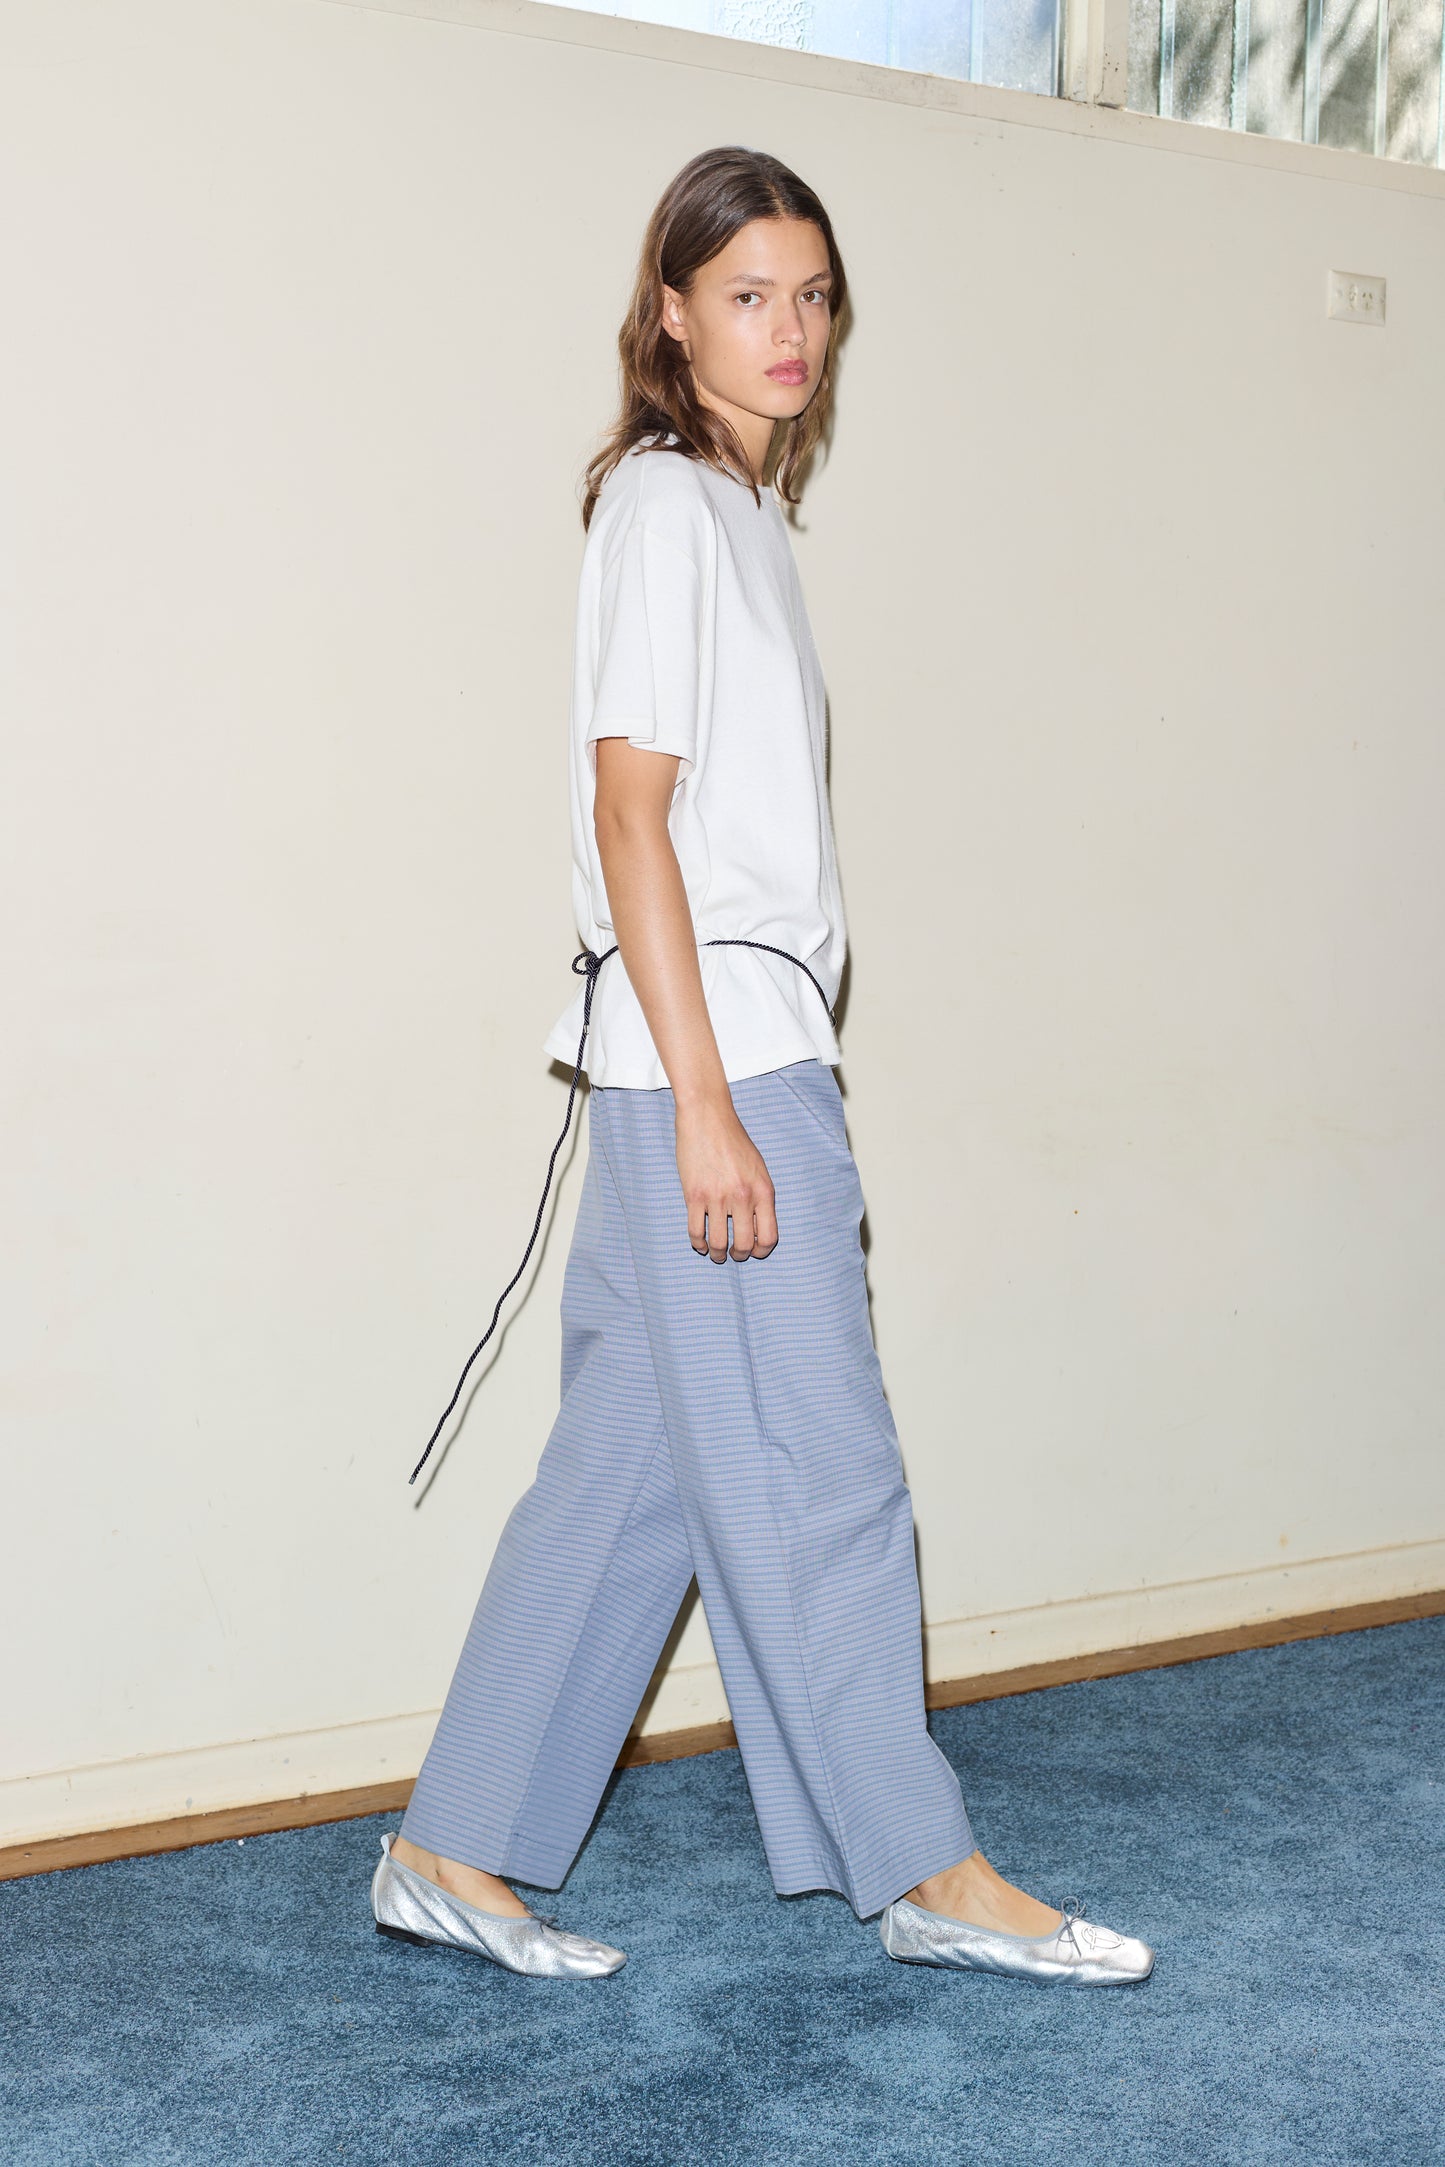 Female model wearing the ease trouser - pillow check by Deiji Studios against plain background